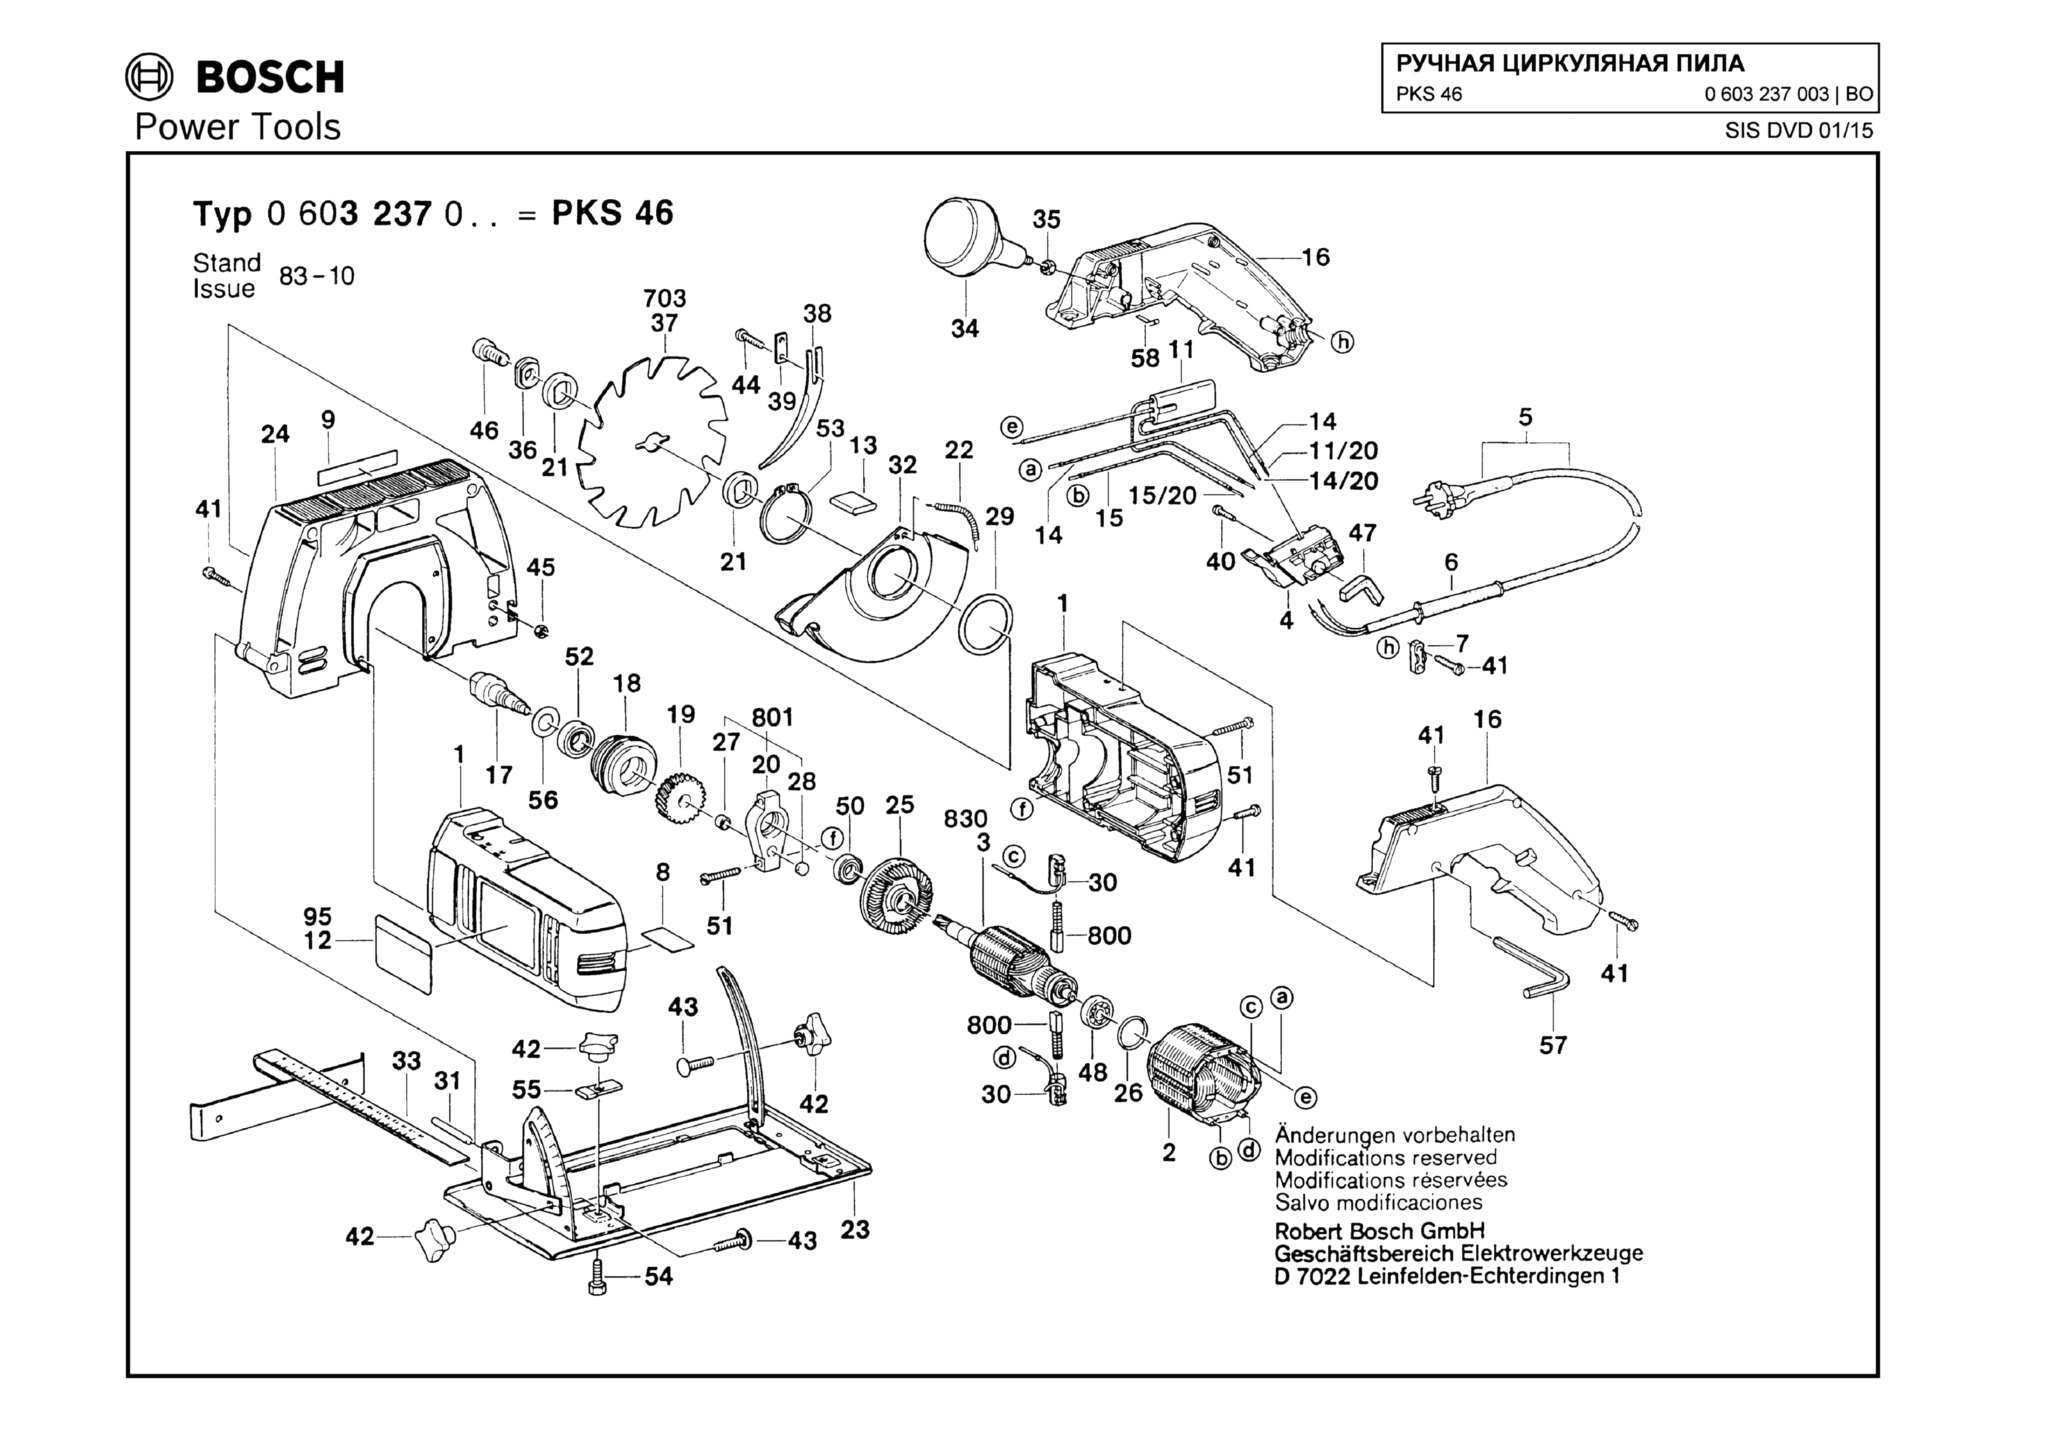 Запчасти, схема и деталировка Bosch PKS 46 (ТИП 0603237003)